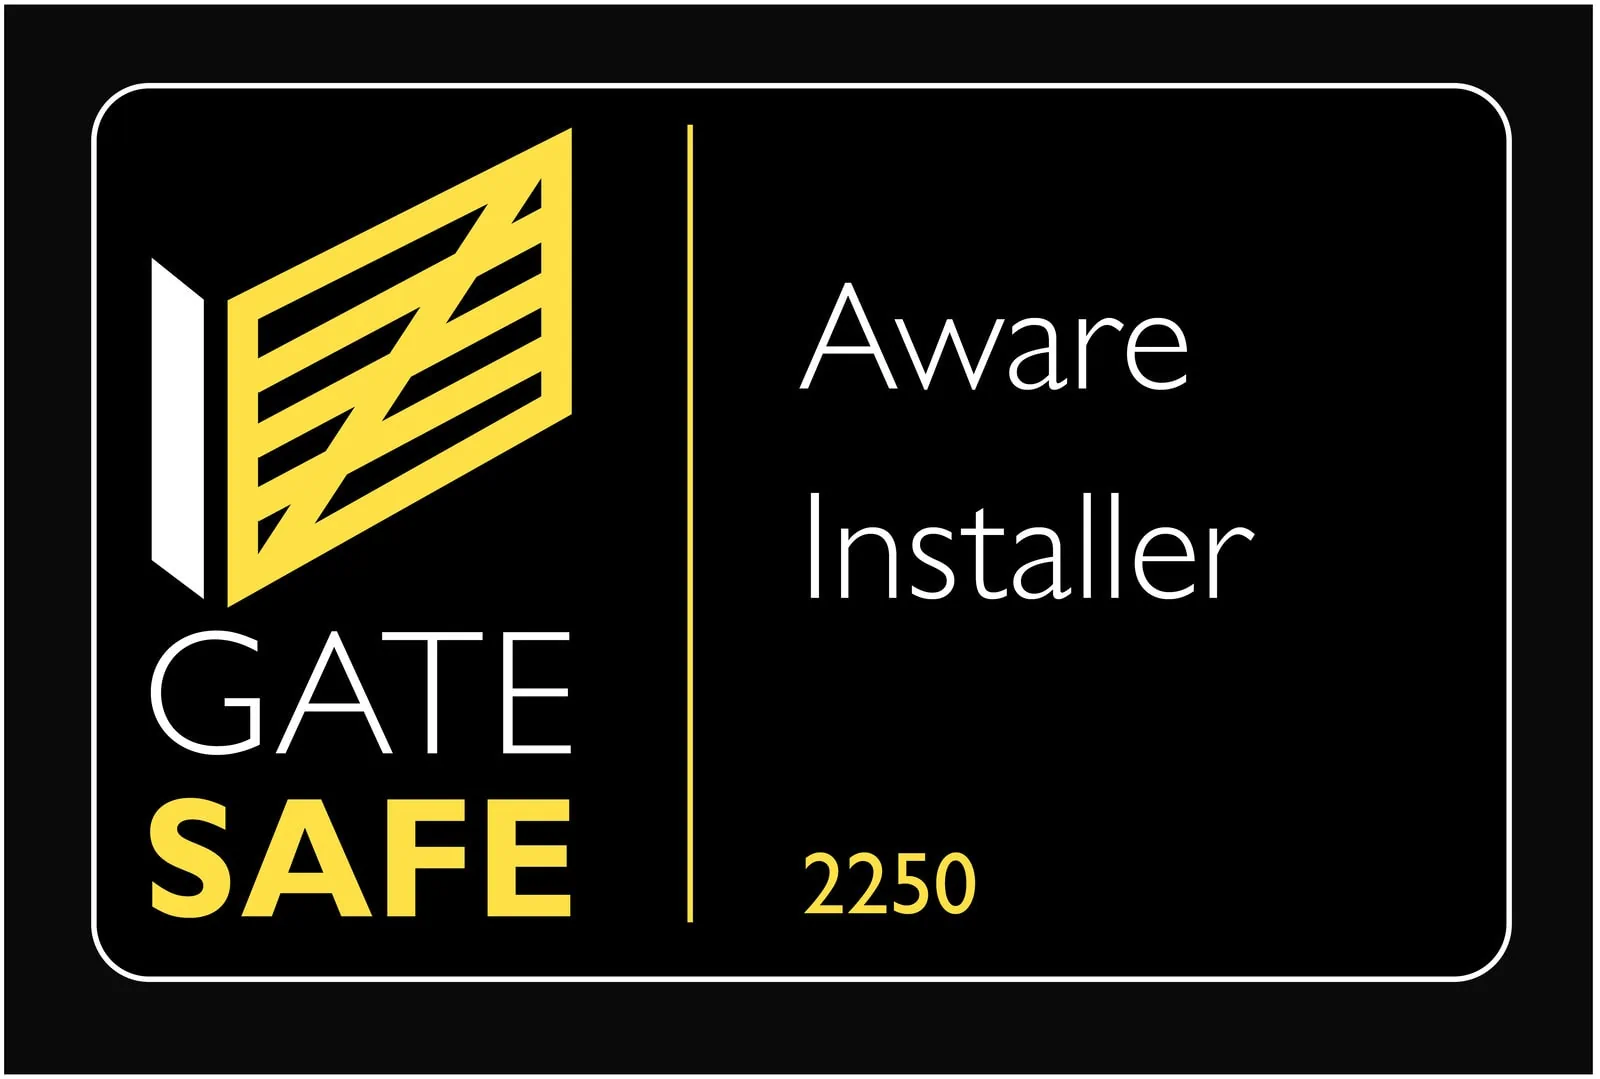 Gate safe Installer logo company 2250 iSecure (UK) Ltd